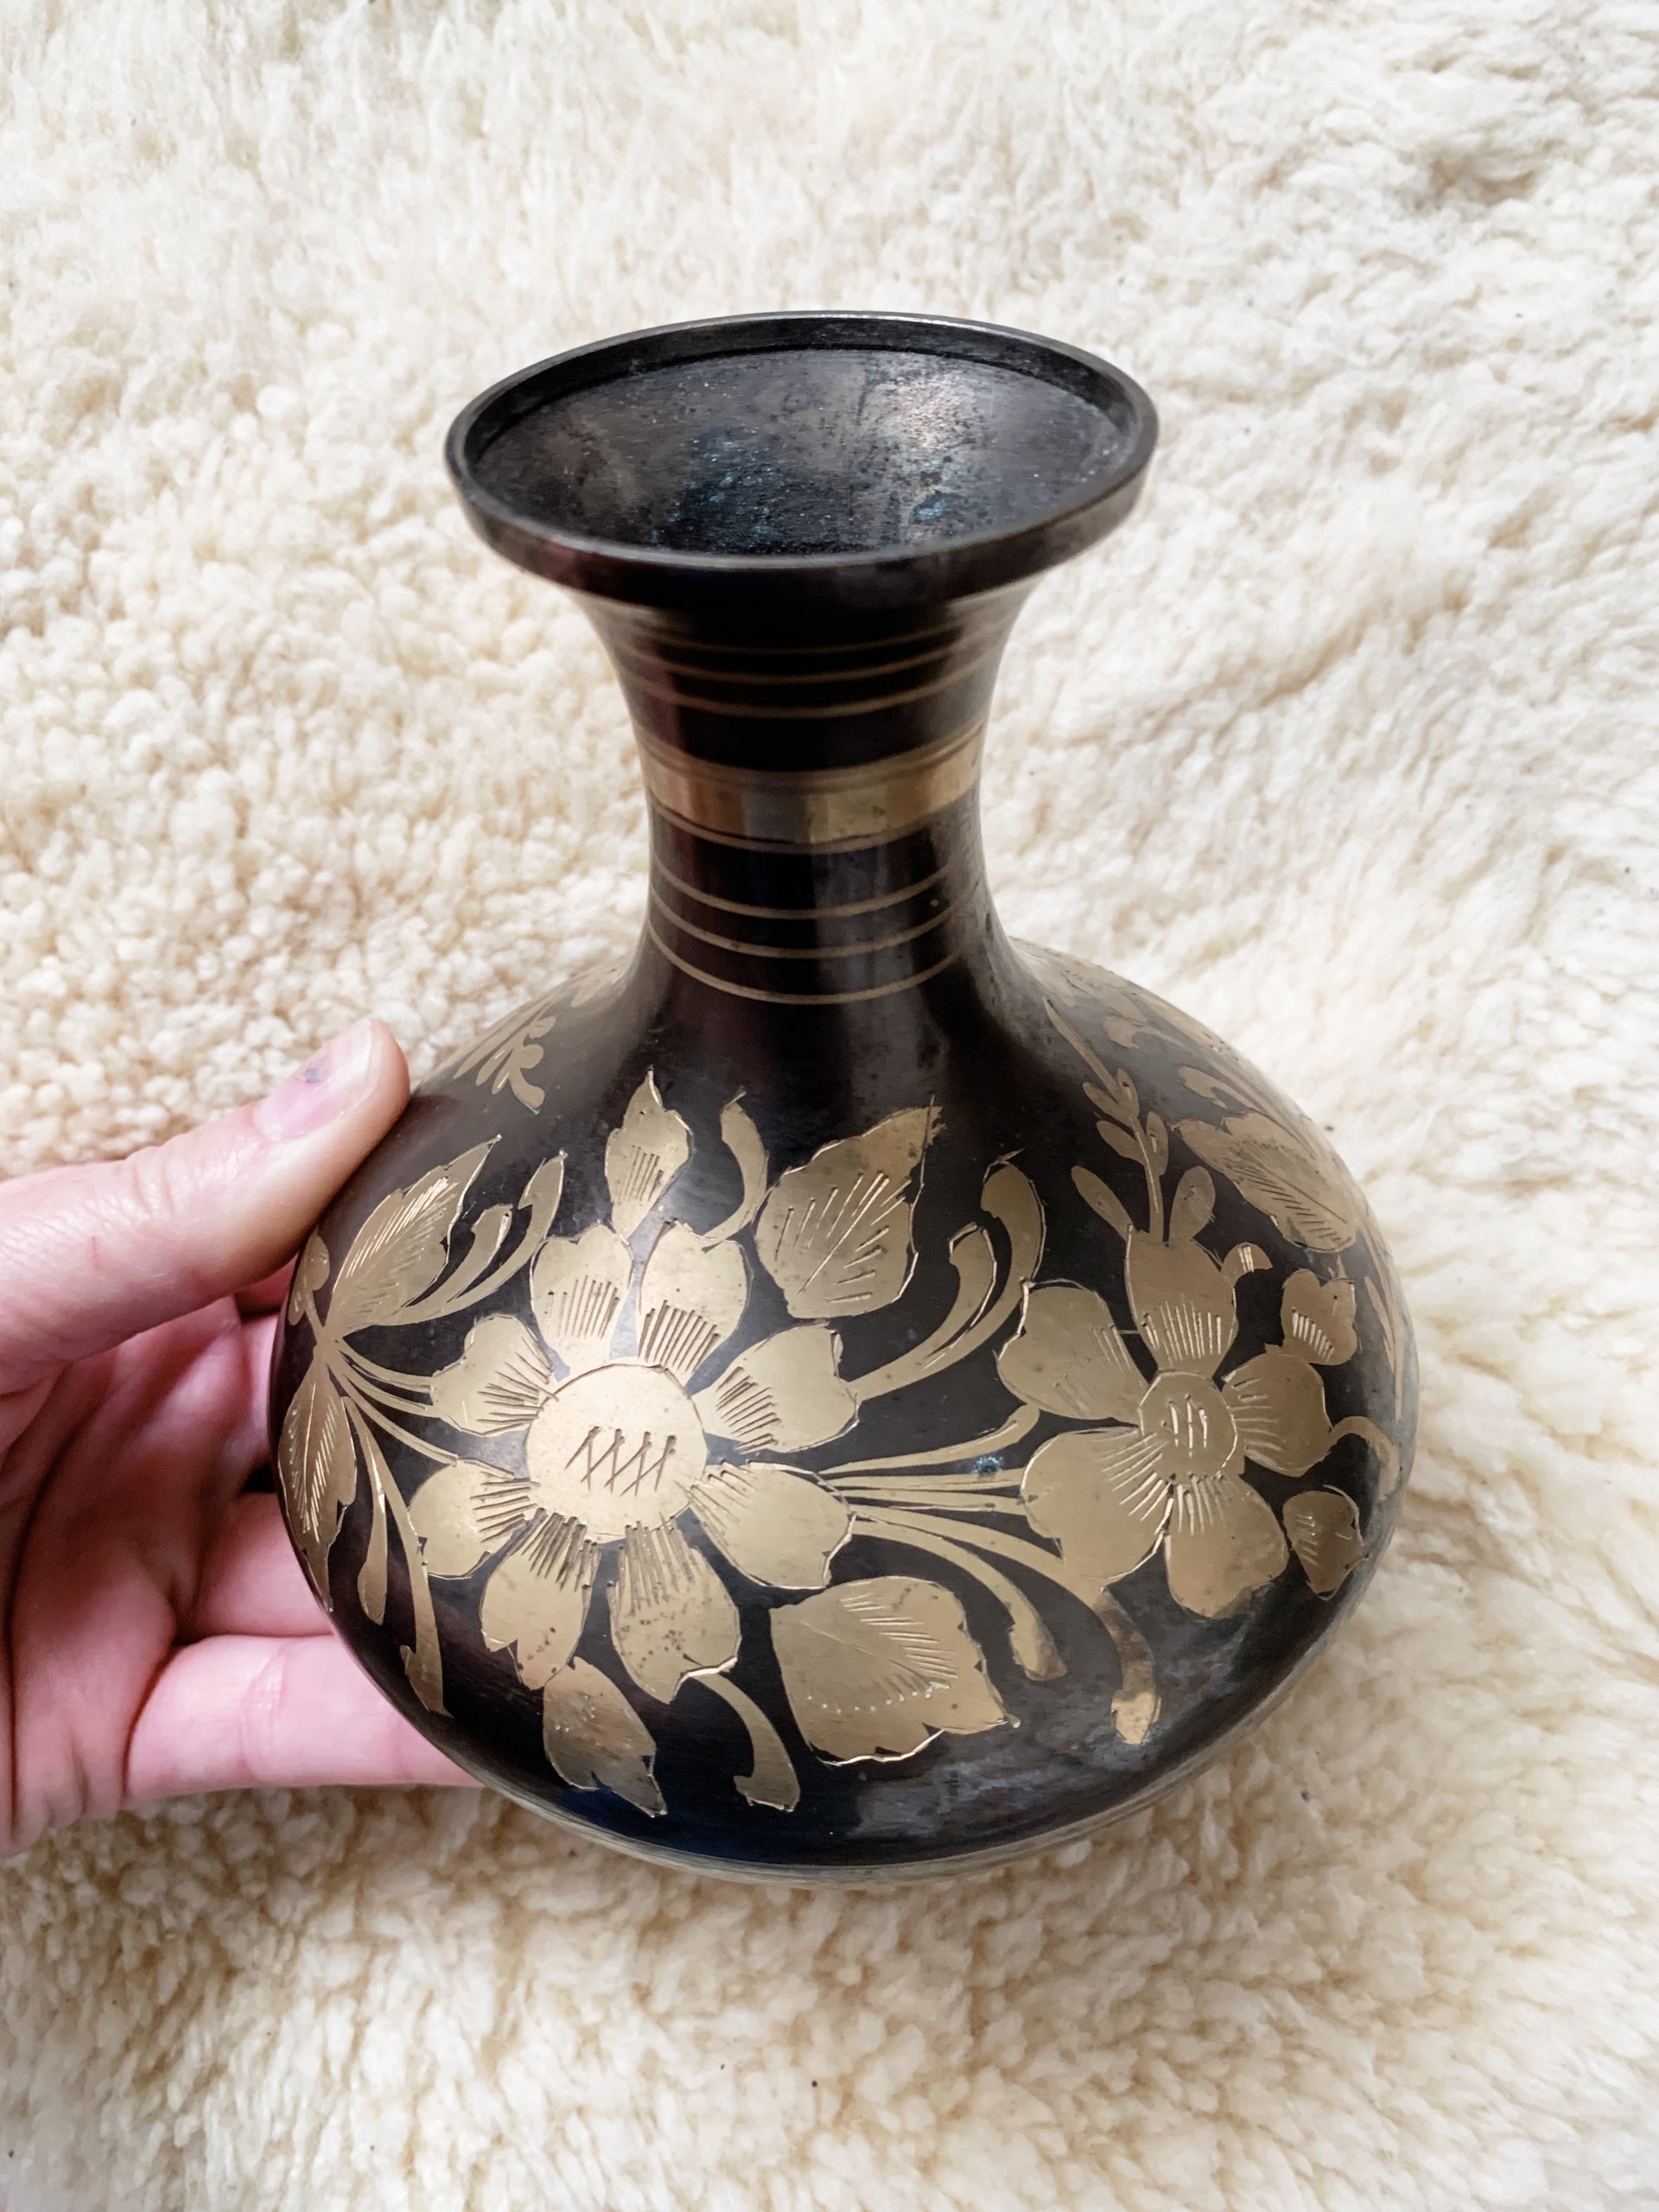 Vintage Etched Brass Vase. Old Ornate Brass Vase Made in India